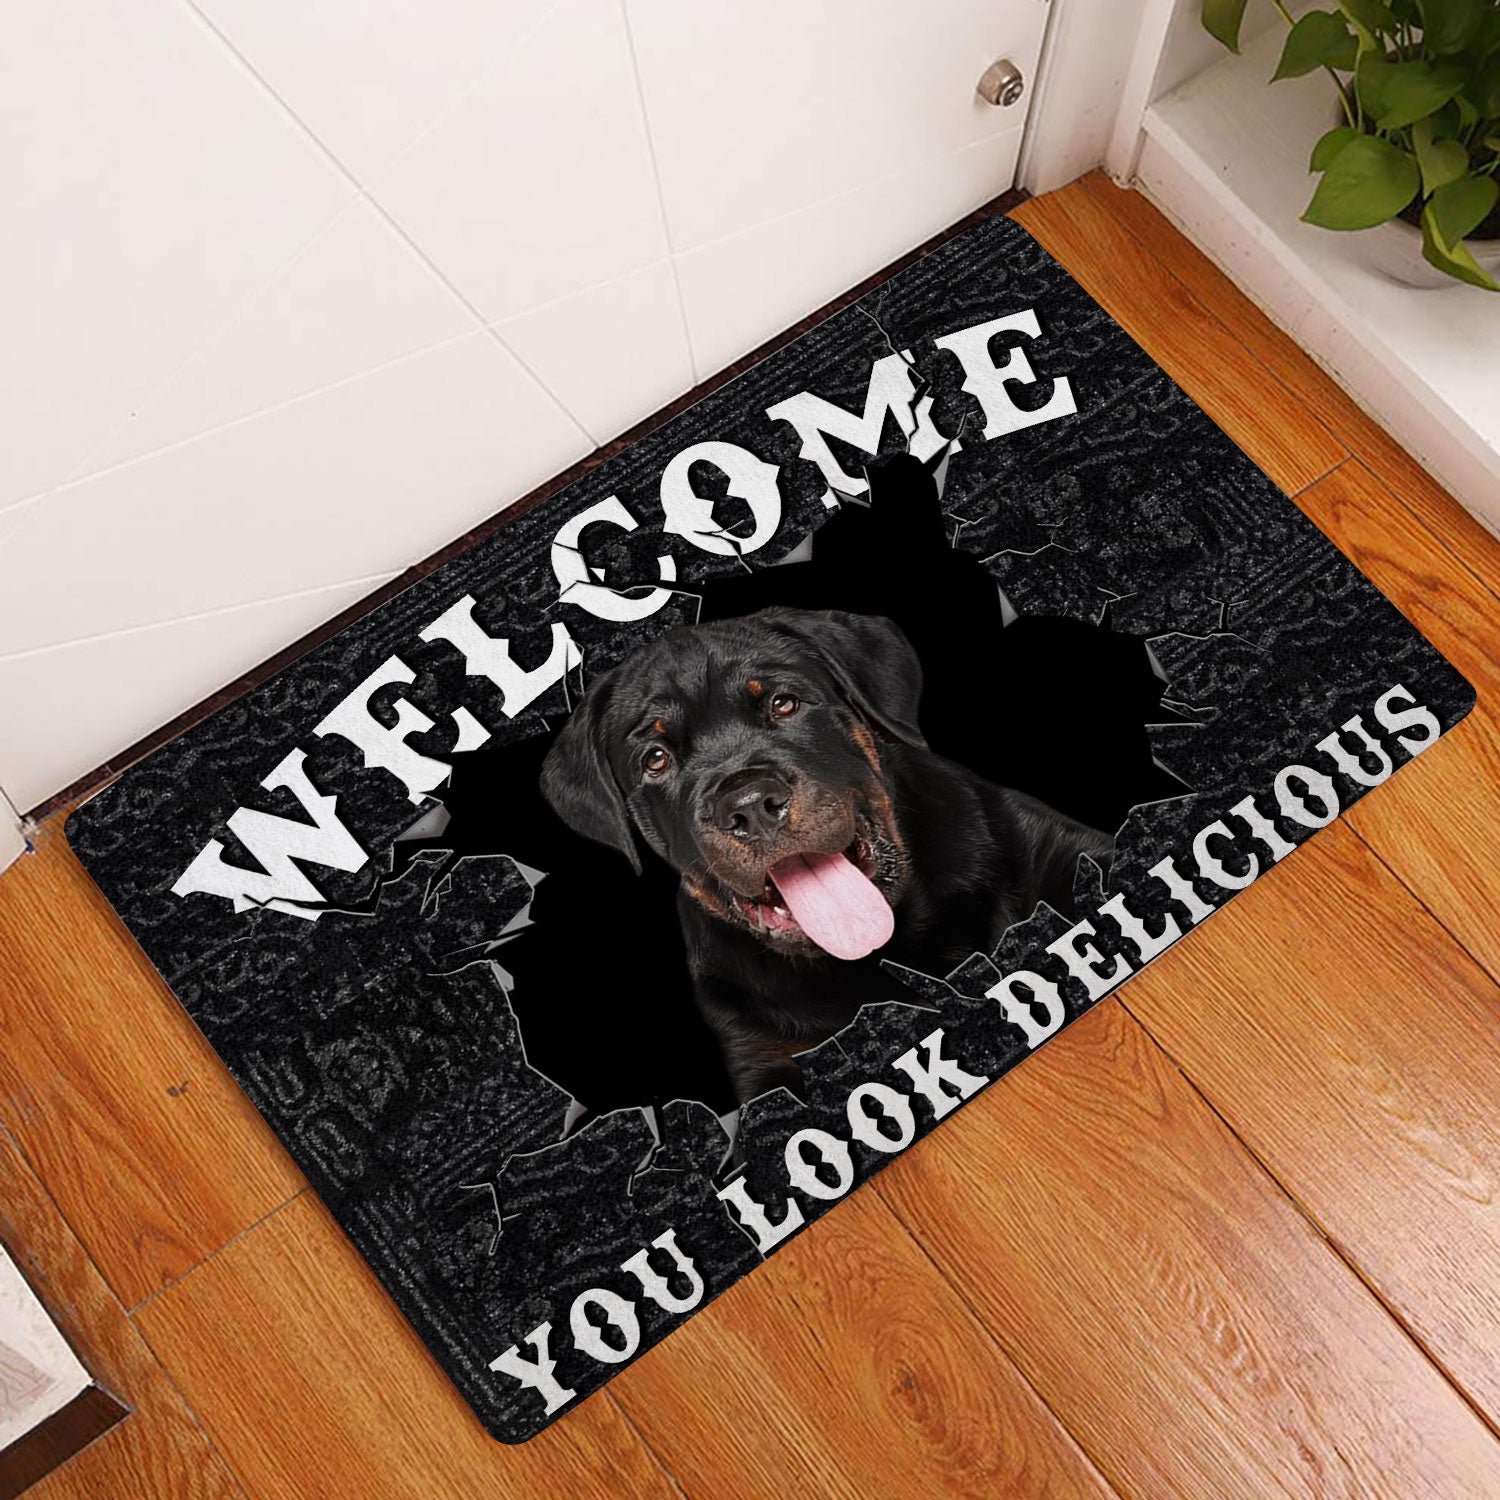 Ohaprints-Doormat-Outdoor-Indoor-Funny-Rottweiler-Dog-Welcome-You-Look-Delicious-Dog-Lover-Gift-Rubber-Door-Mat-168-